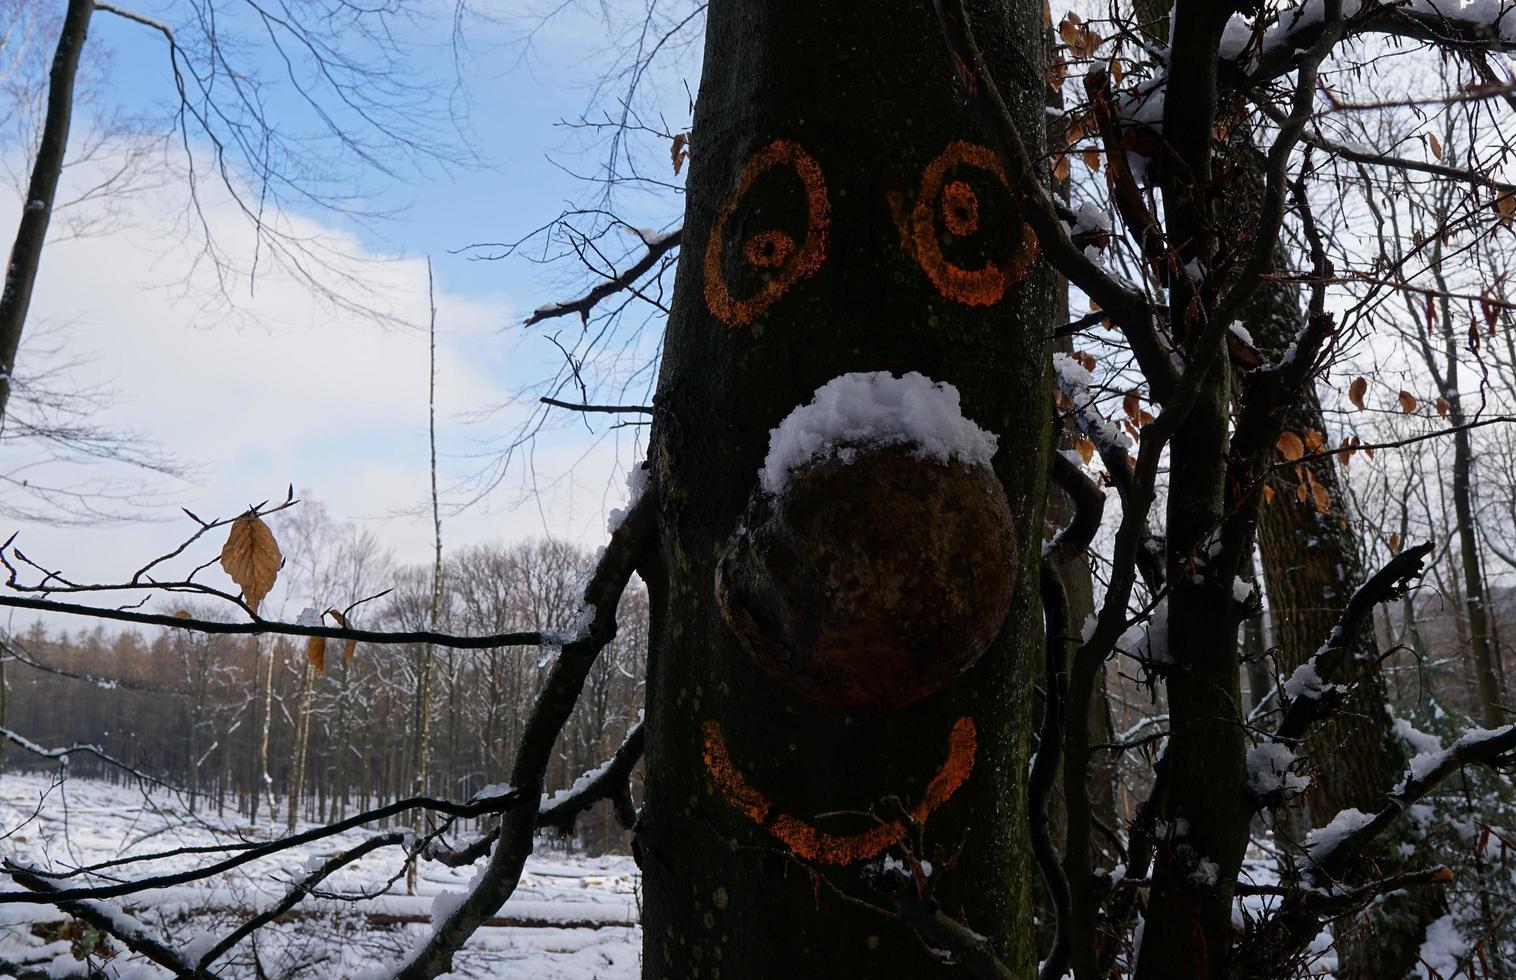 lindo inverno branco na floresta, galhos congelados com neve e cara engraçada natural da árvore. foto